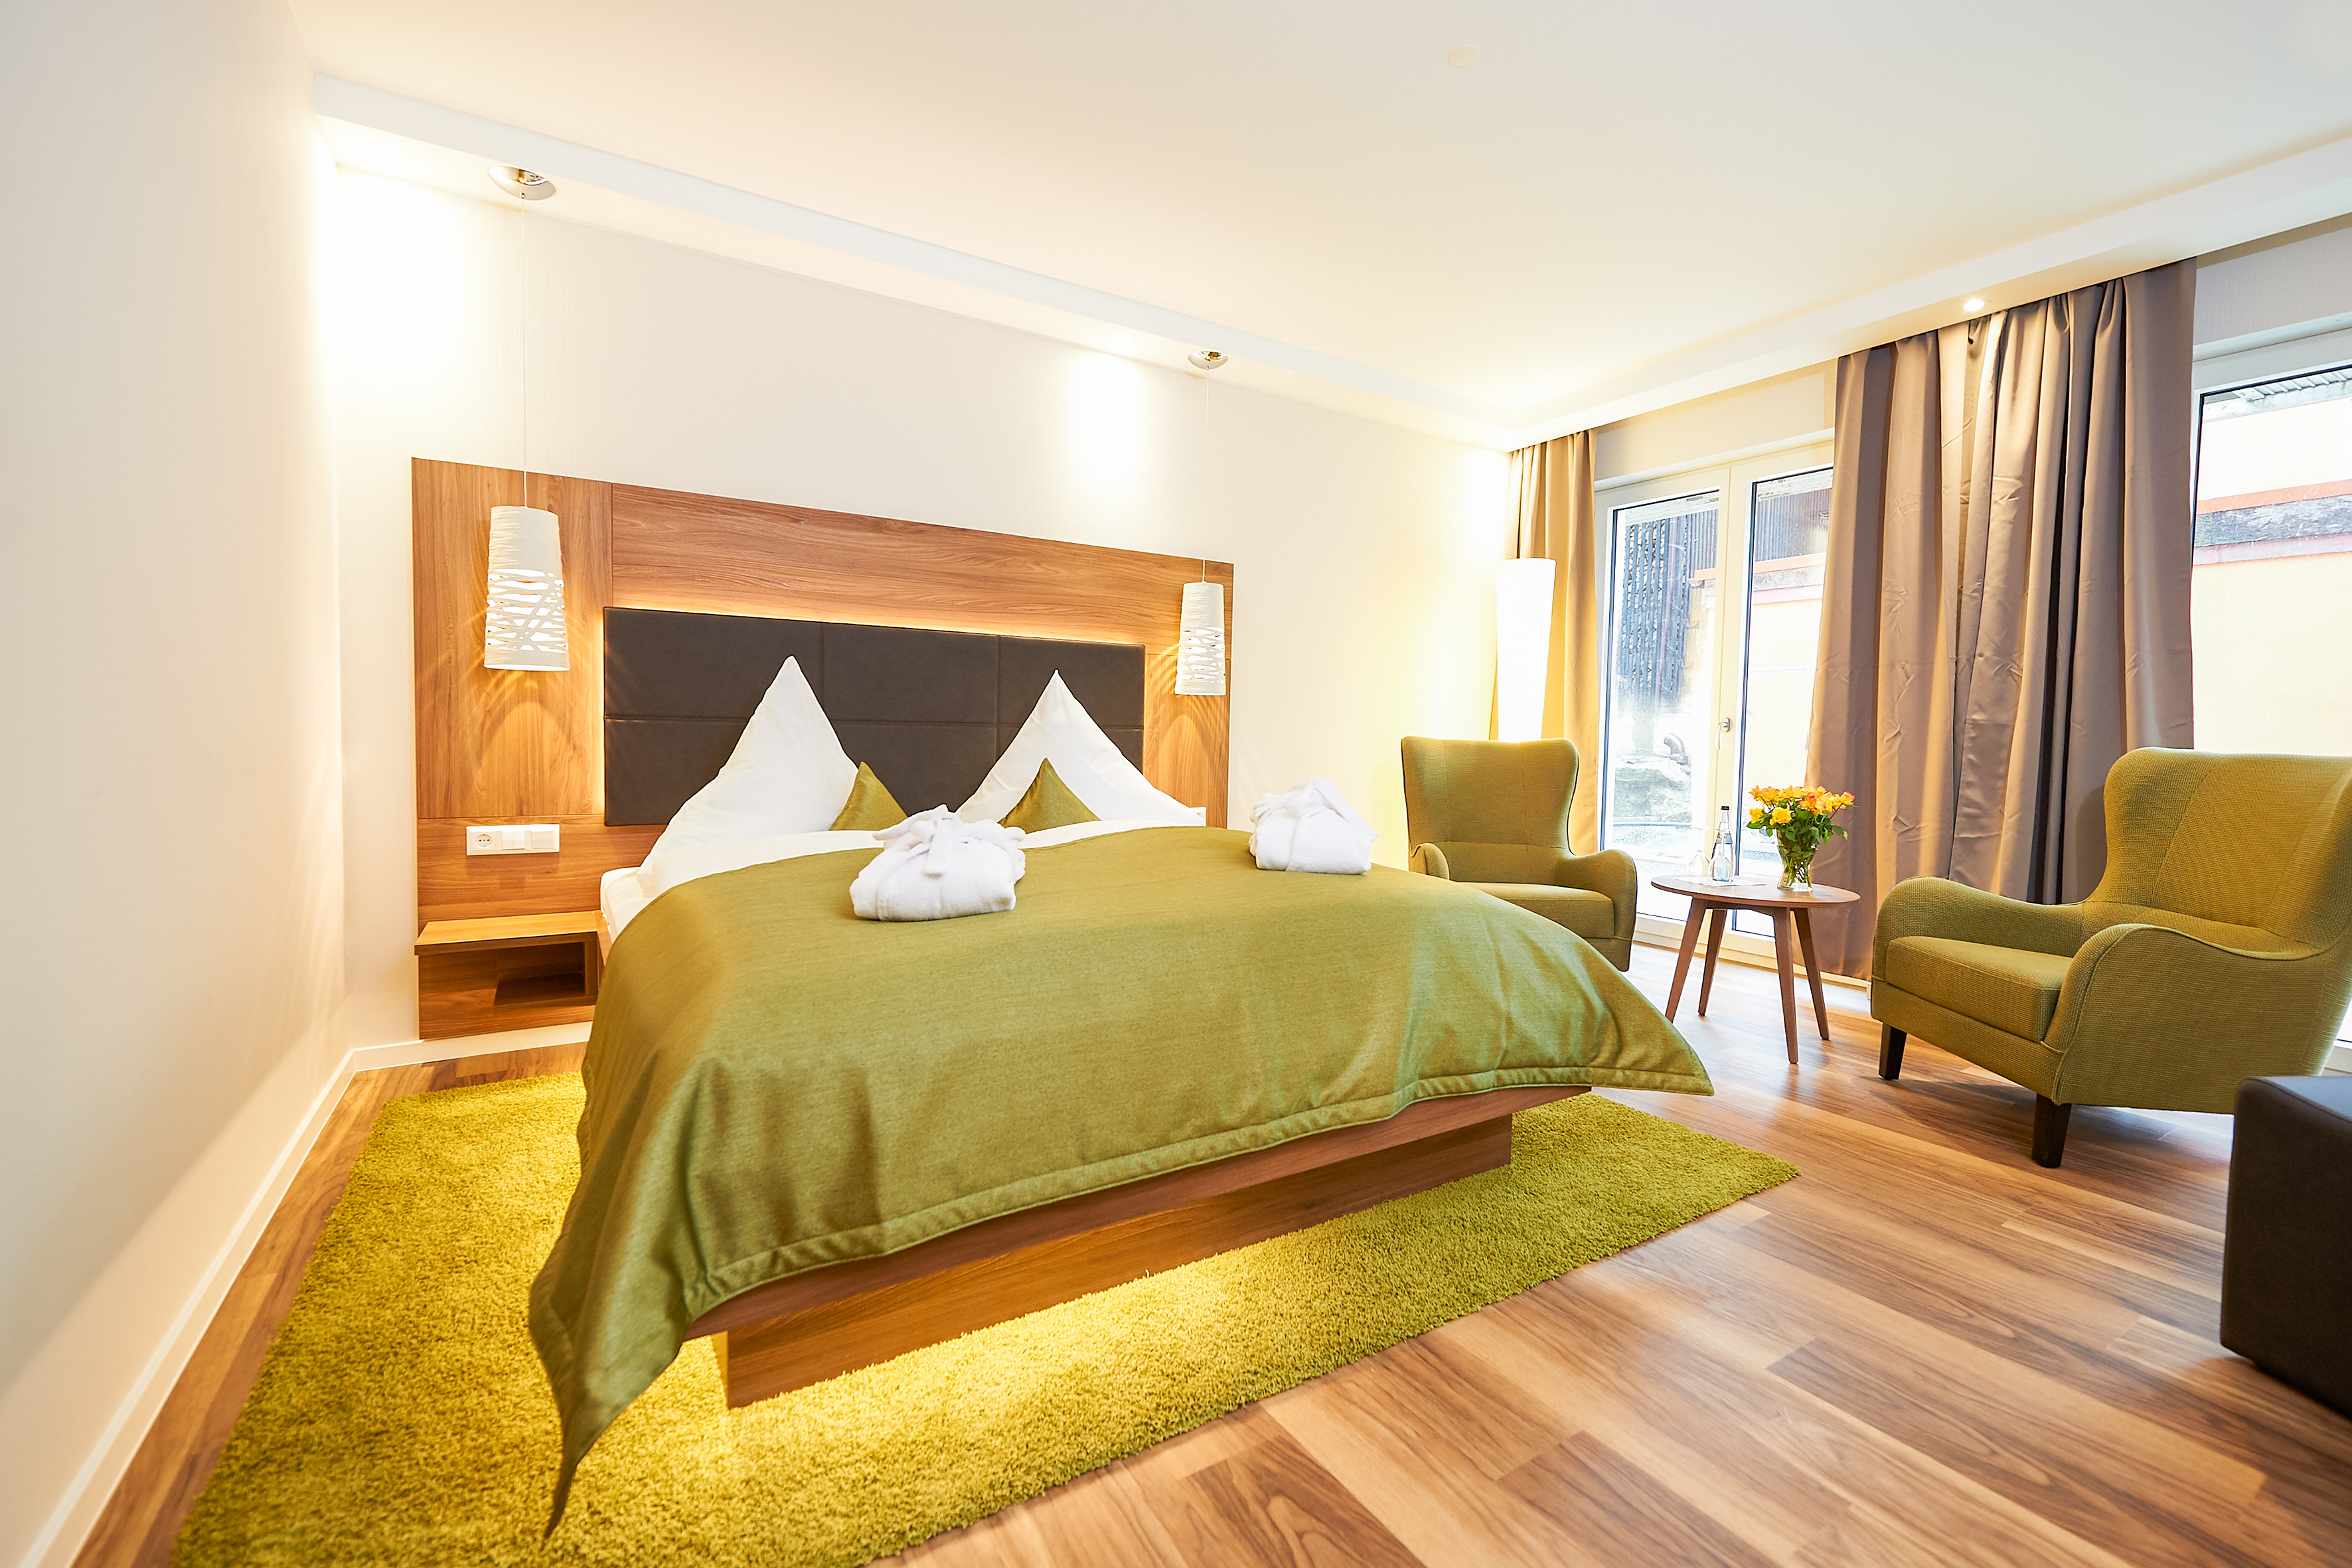 5 Übernachtungen inkl. SPA-Behandlungspaket im Hotel Schloss Döttingen für 2 Personen